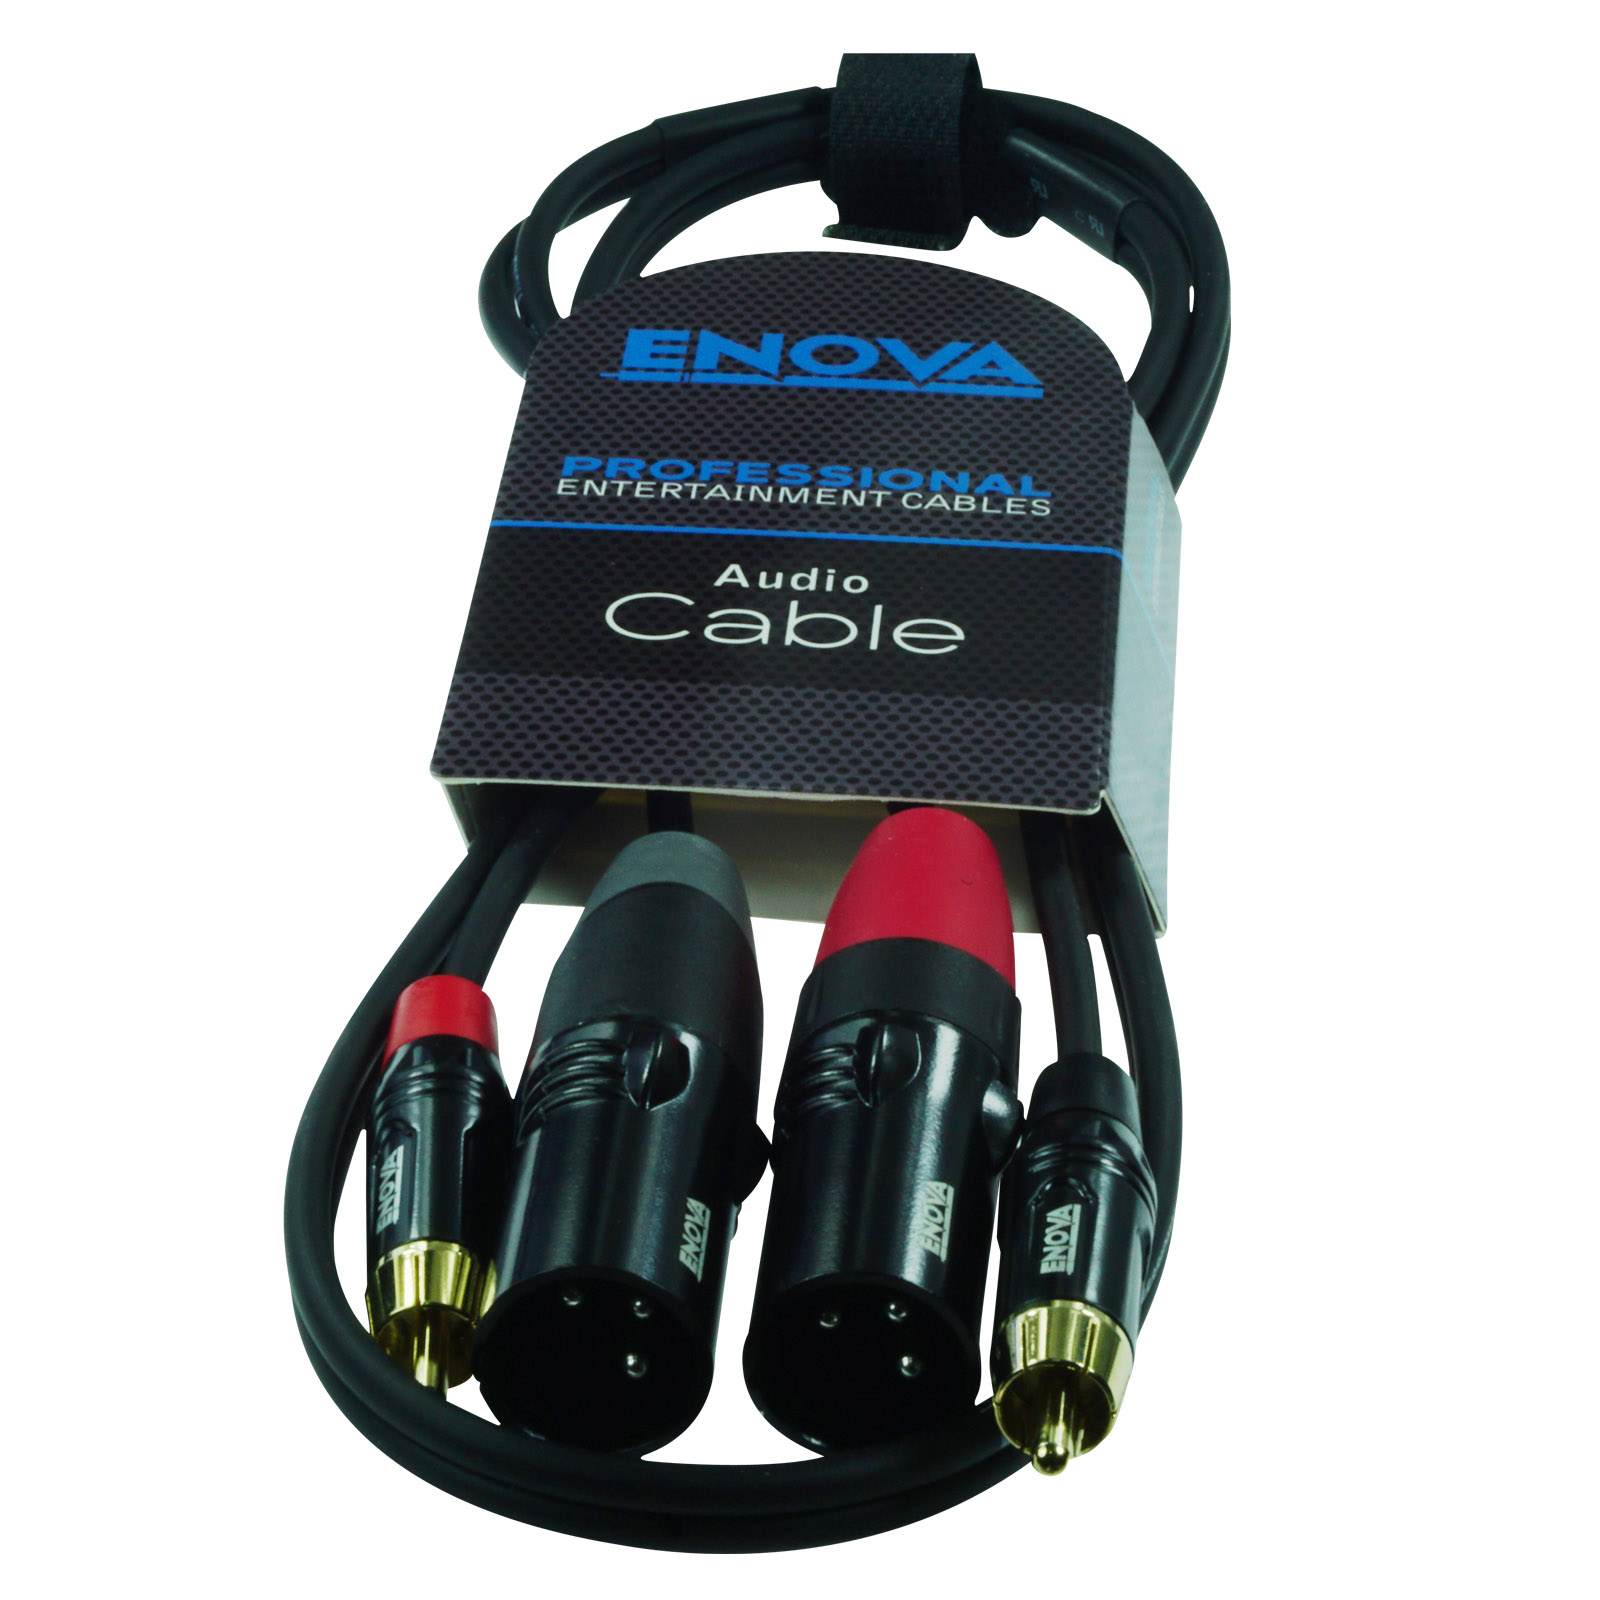 ENOVA, cavo DMX da 1 metro con connettore XLR a 5 pin  Enova - Connettore  Pro AV e cavo di collegamento Pro AV